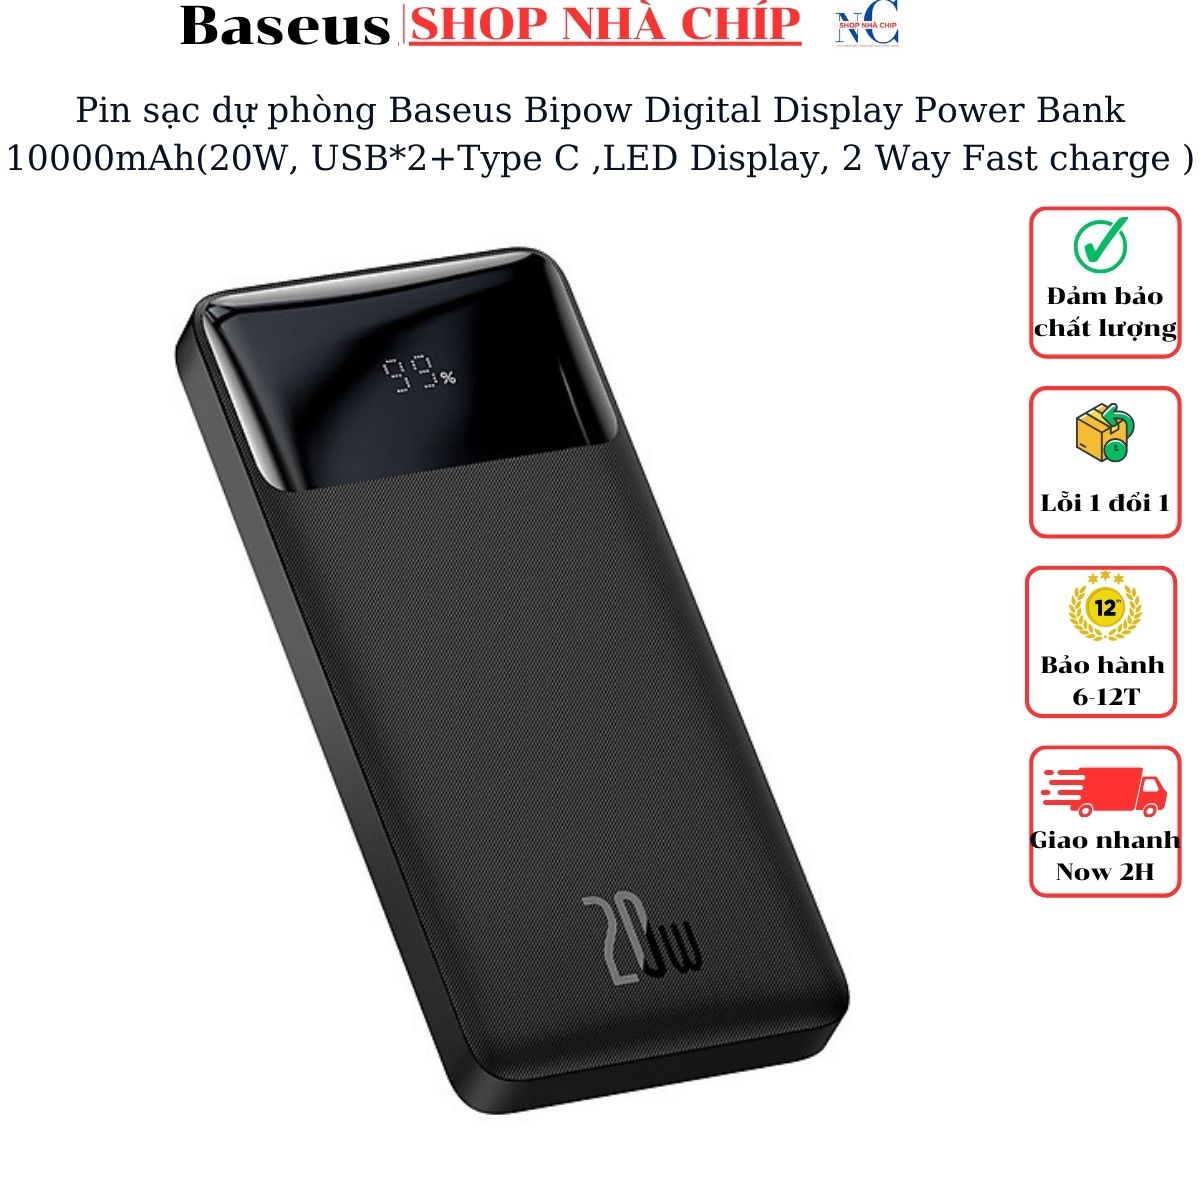 Hình ảnh Pin sạc dự phòng Baseus Bipow Digital Display Power Bank 20000mAh ( 15W/20W, USB*2+Type C , LED Display, 2 Way Fast charge ) - Hàng chính hãng